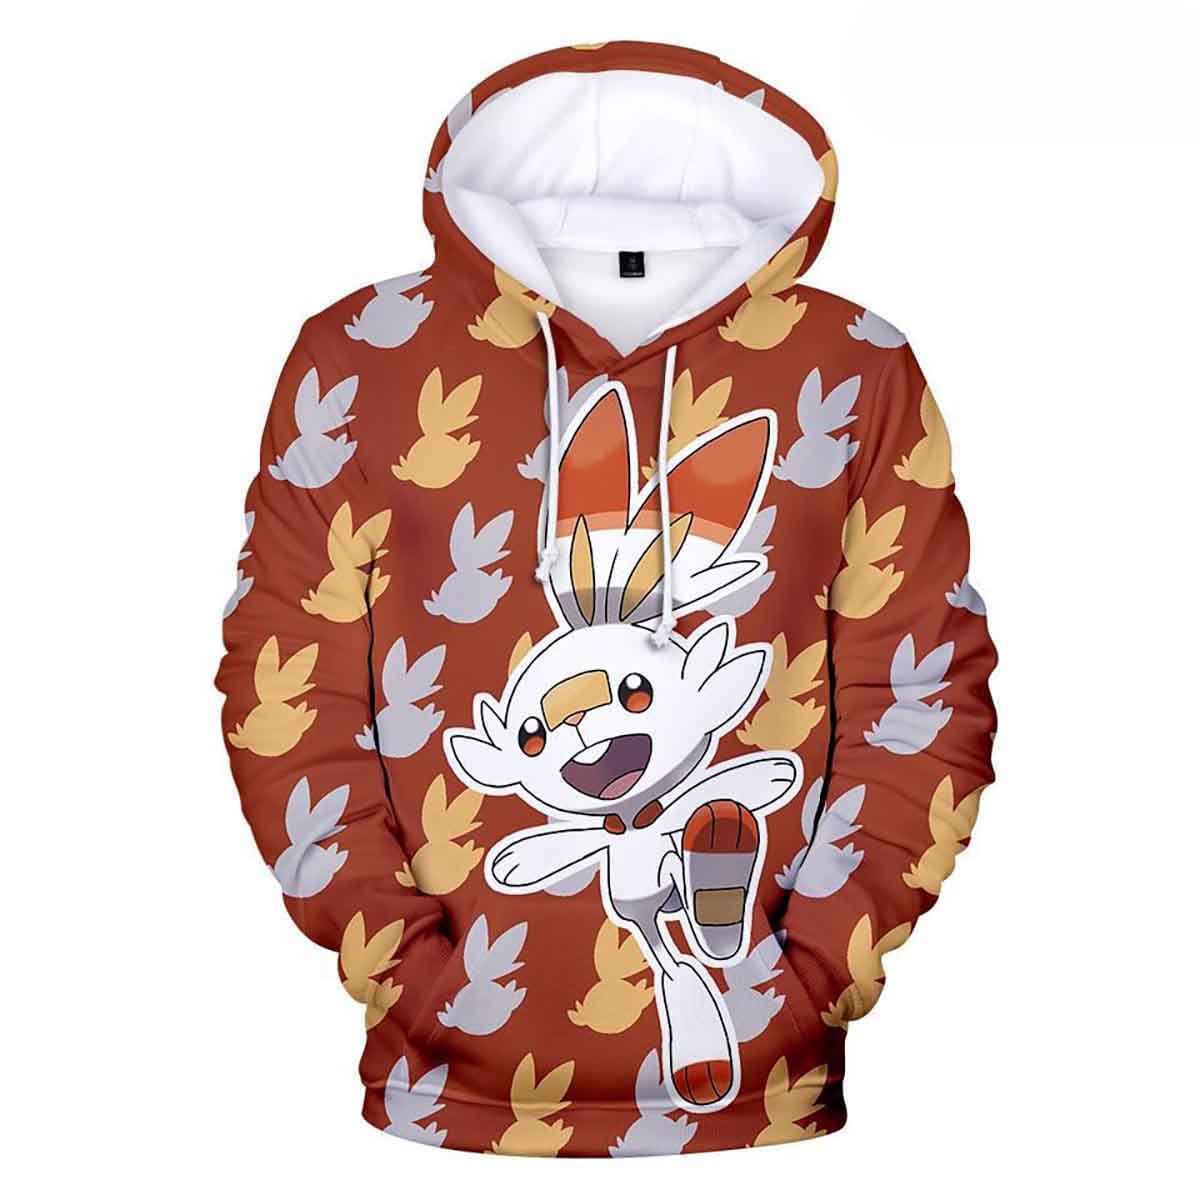 Scorbunny Pokemon Rabbit-Like Anime Hd 3d Aop Hoodie